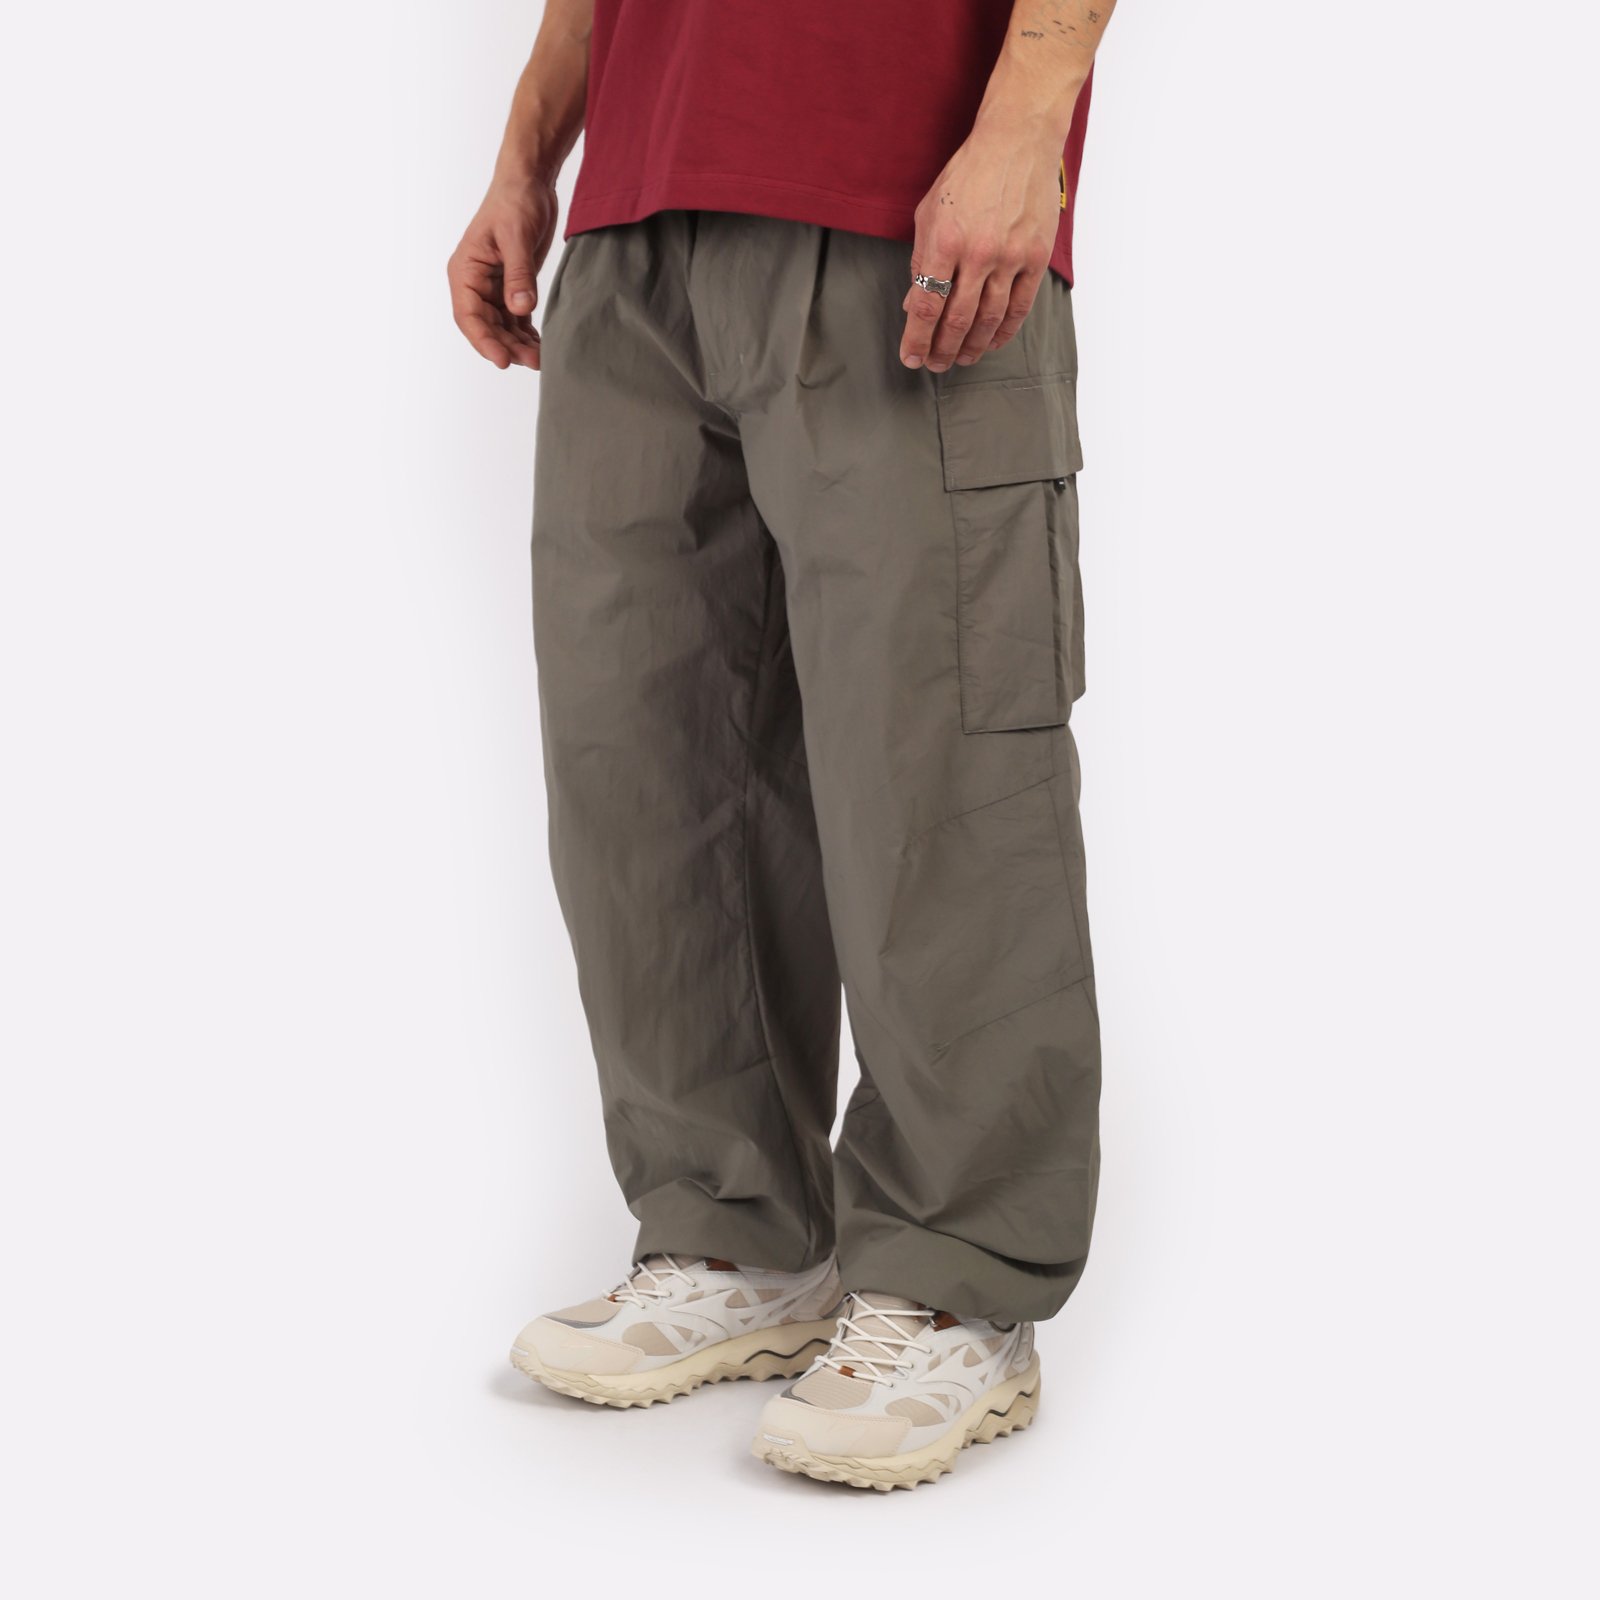 мужские брюки KRAKATAU Rm176-52  (Rm176-52-елово-сер)  - цена, описание, фото 3